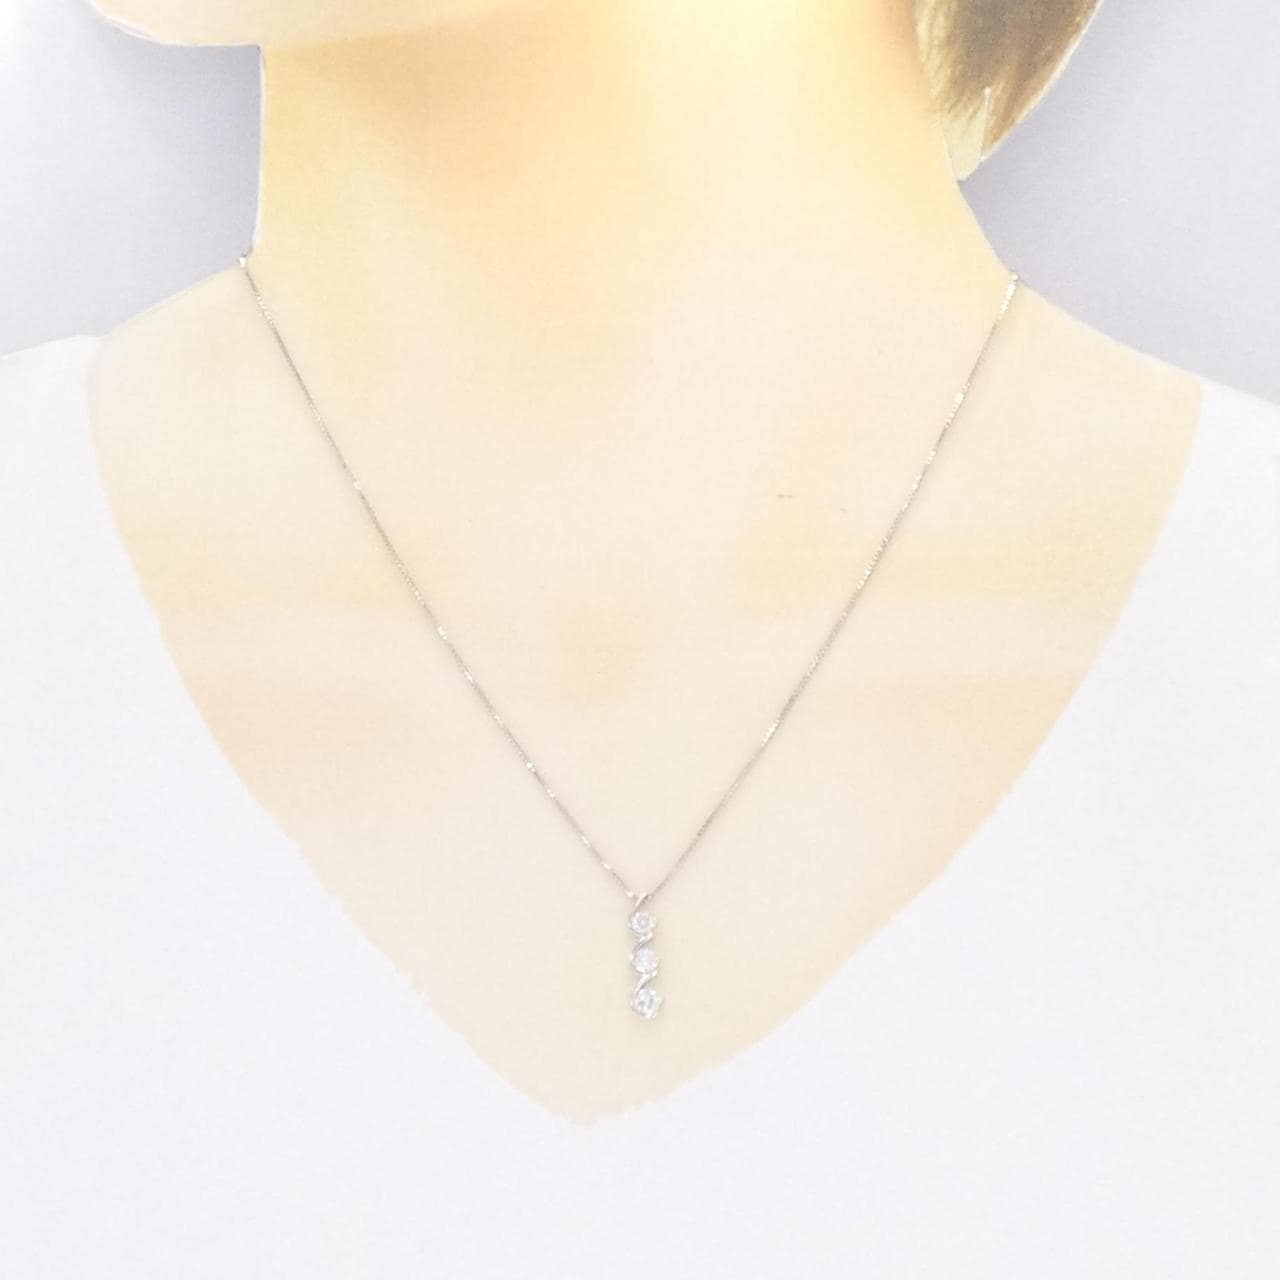 K18WG three stone Diamond necklace 0.5CT